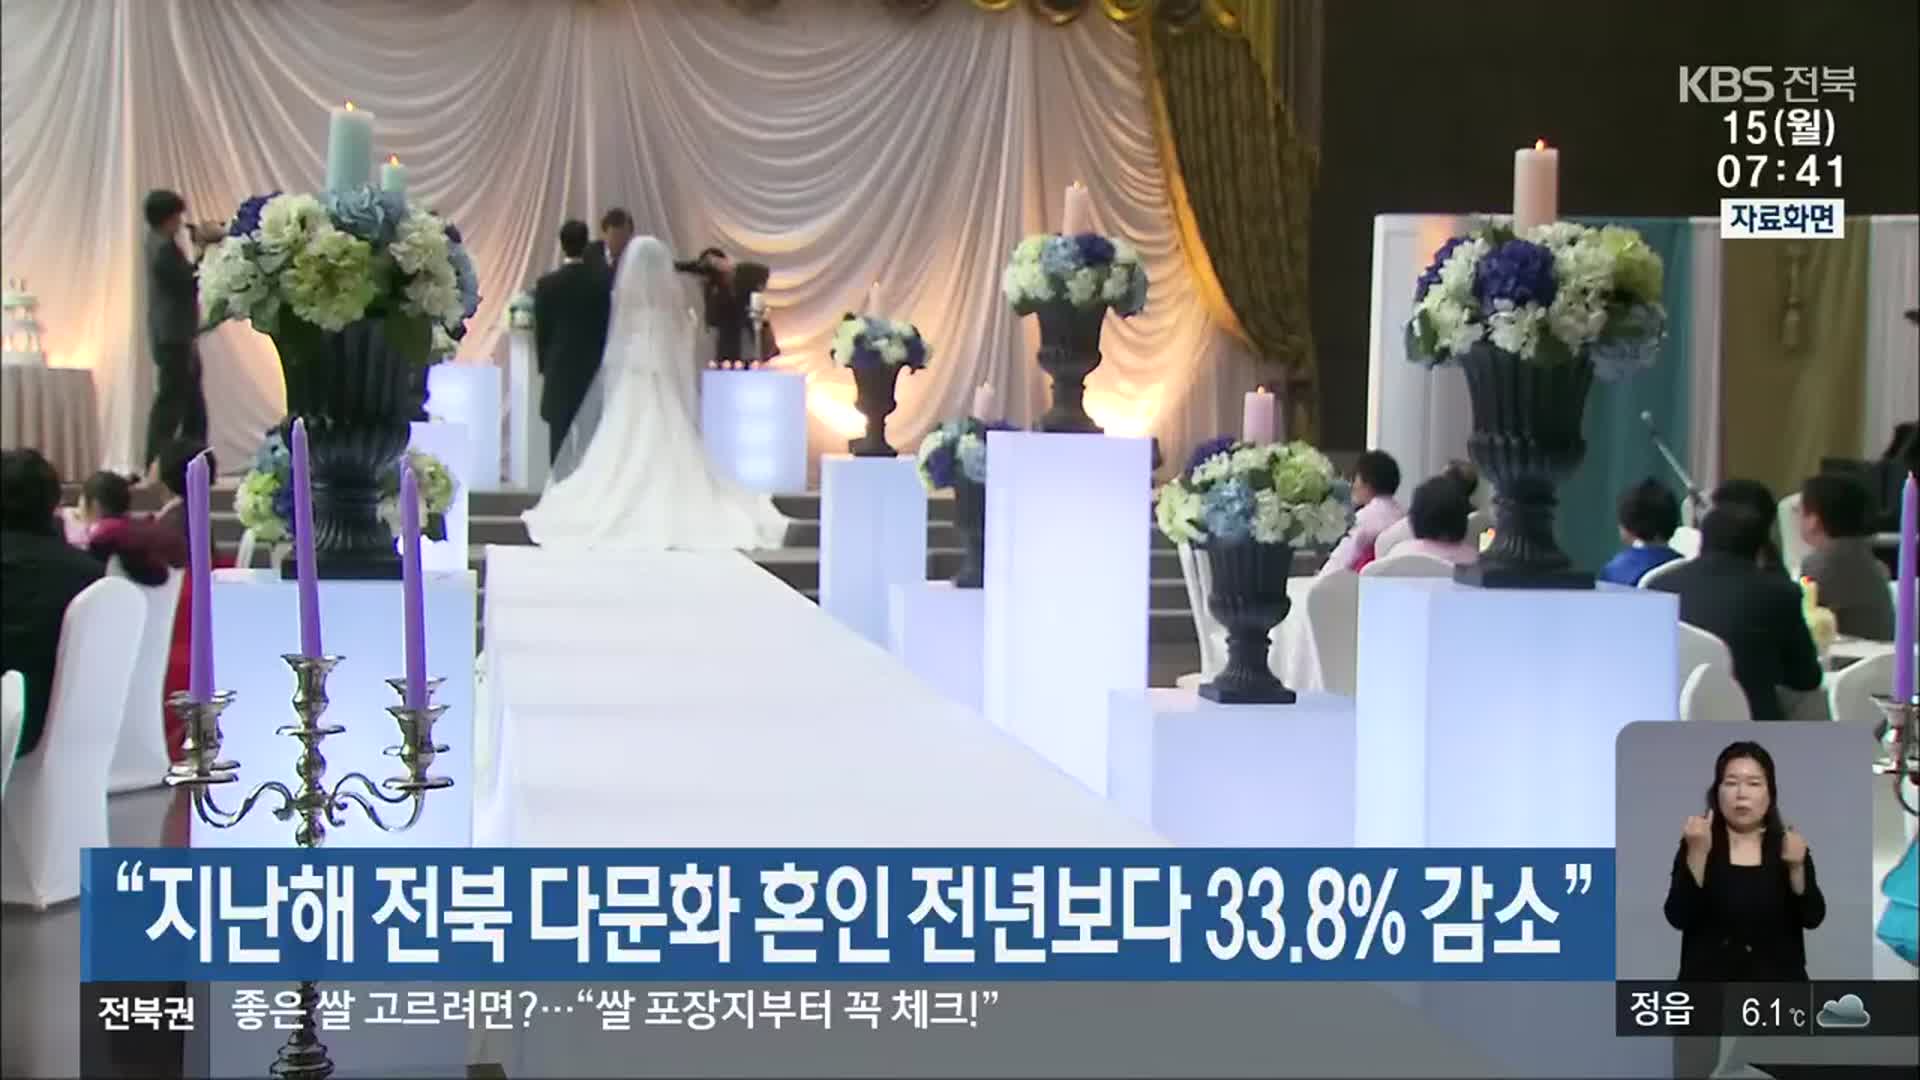 “지난해 전북 다문화 혼인 전년보다 33.8% 감소”